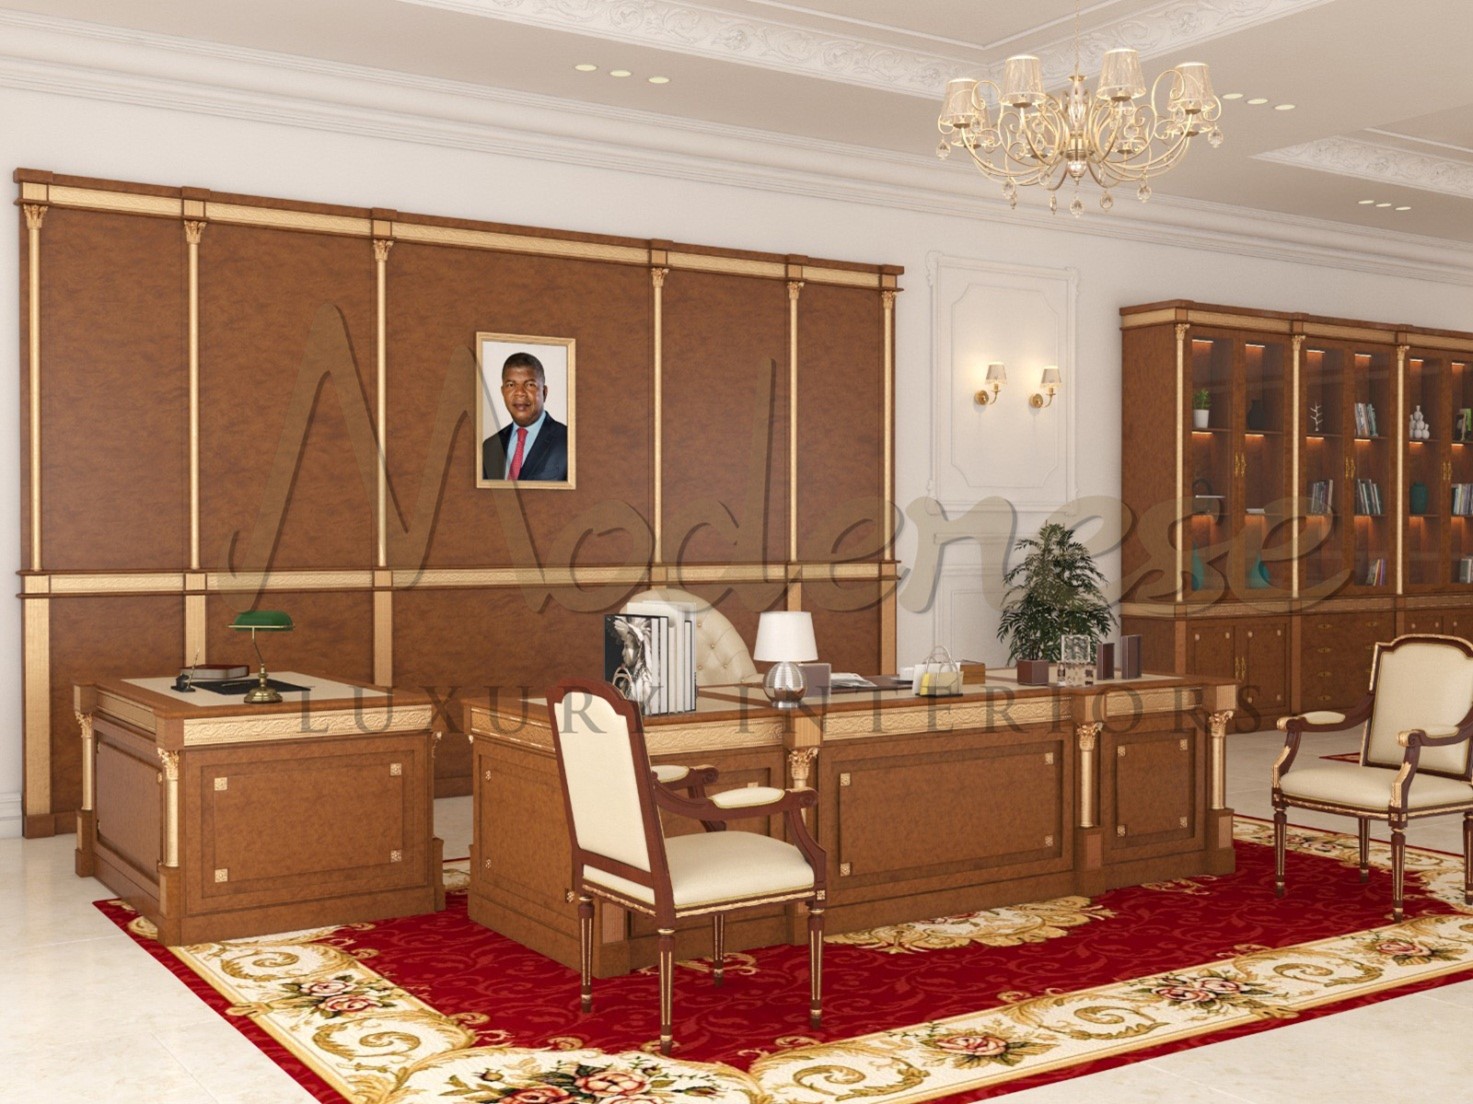 Лучший подрядчик по внутренней отделке офисов в Дубае